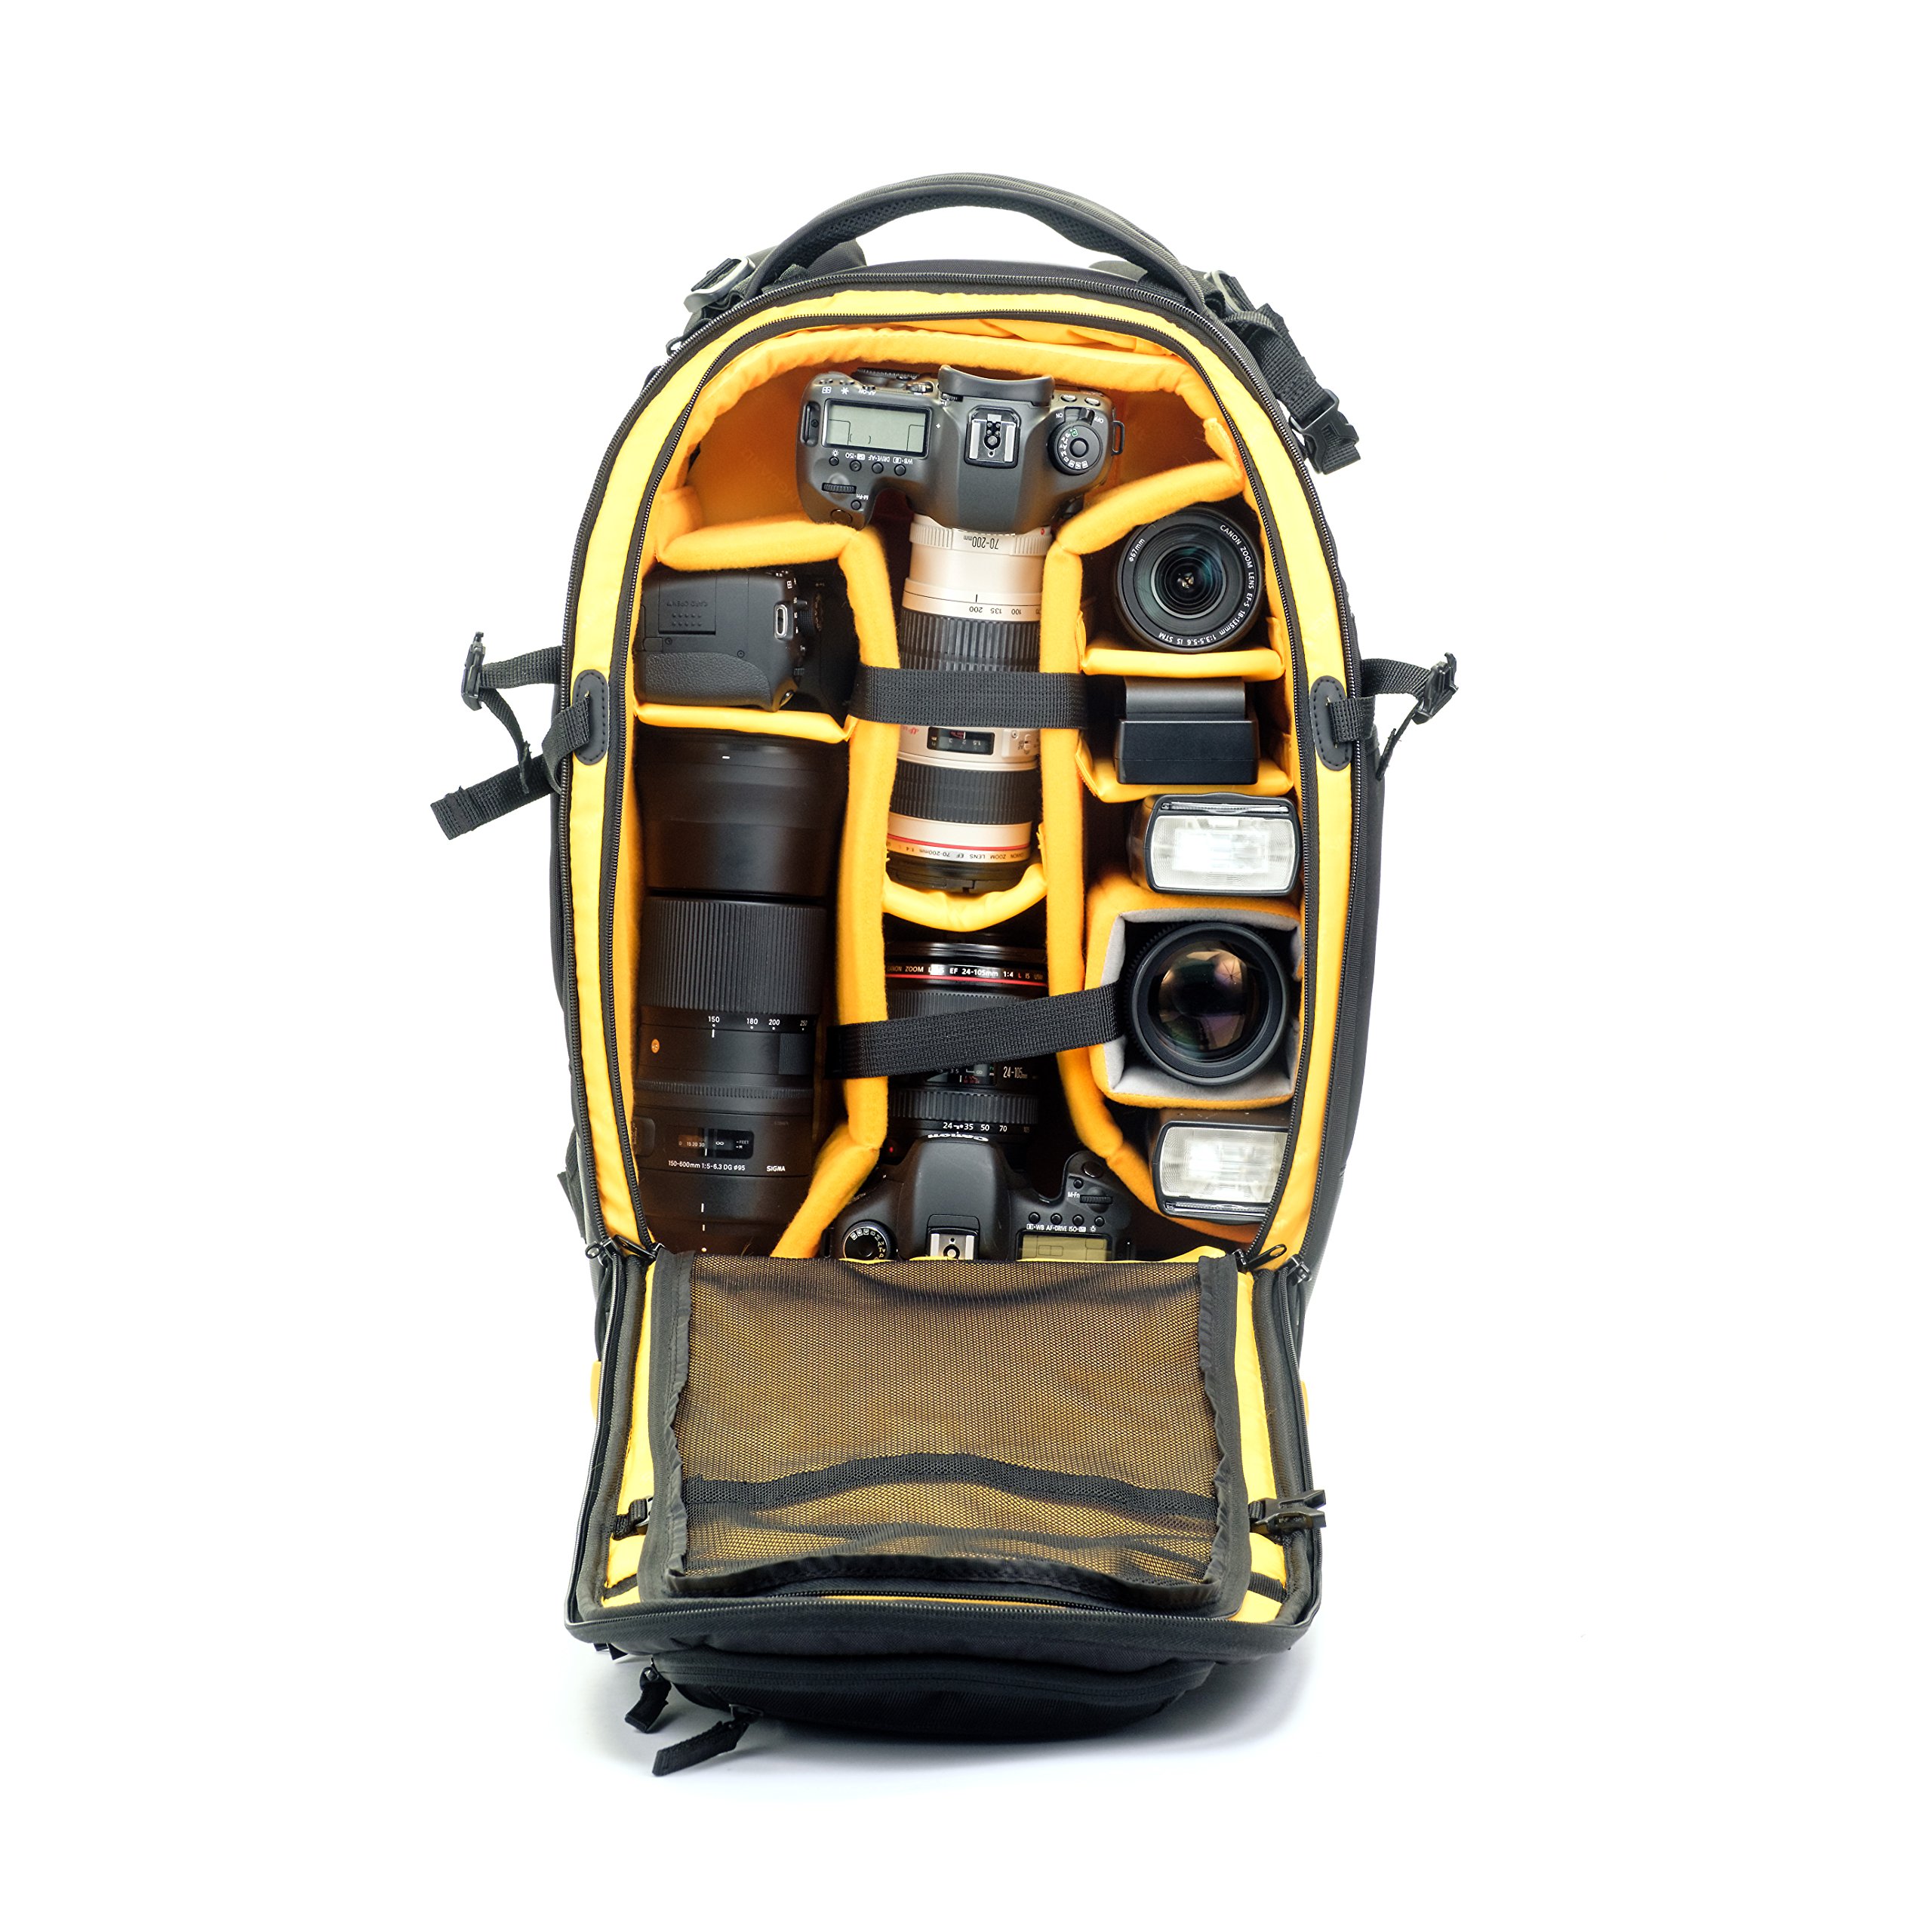 Vanguard ALTA Fly 58T DSLR Camera Backpack, 4 Wheel Spinner/Trolley, Black, Full-Size